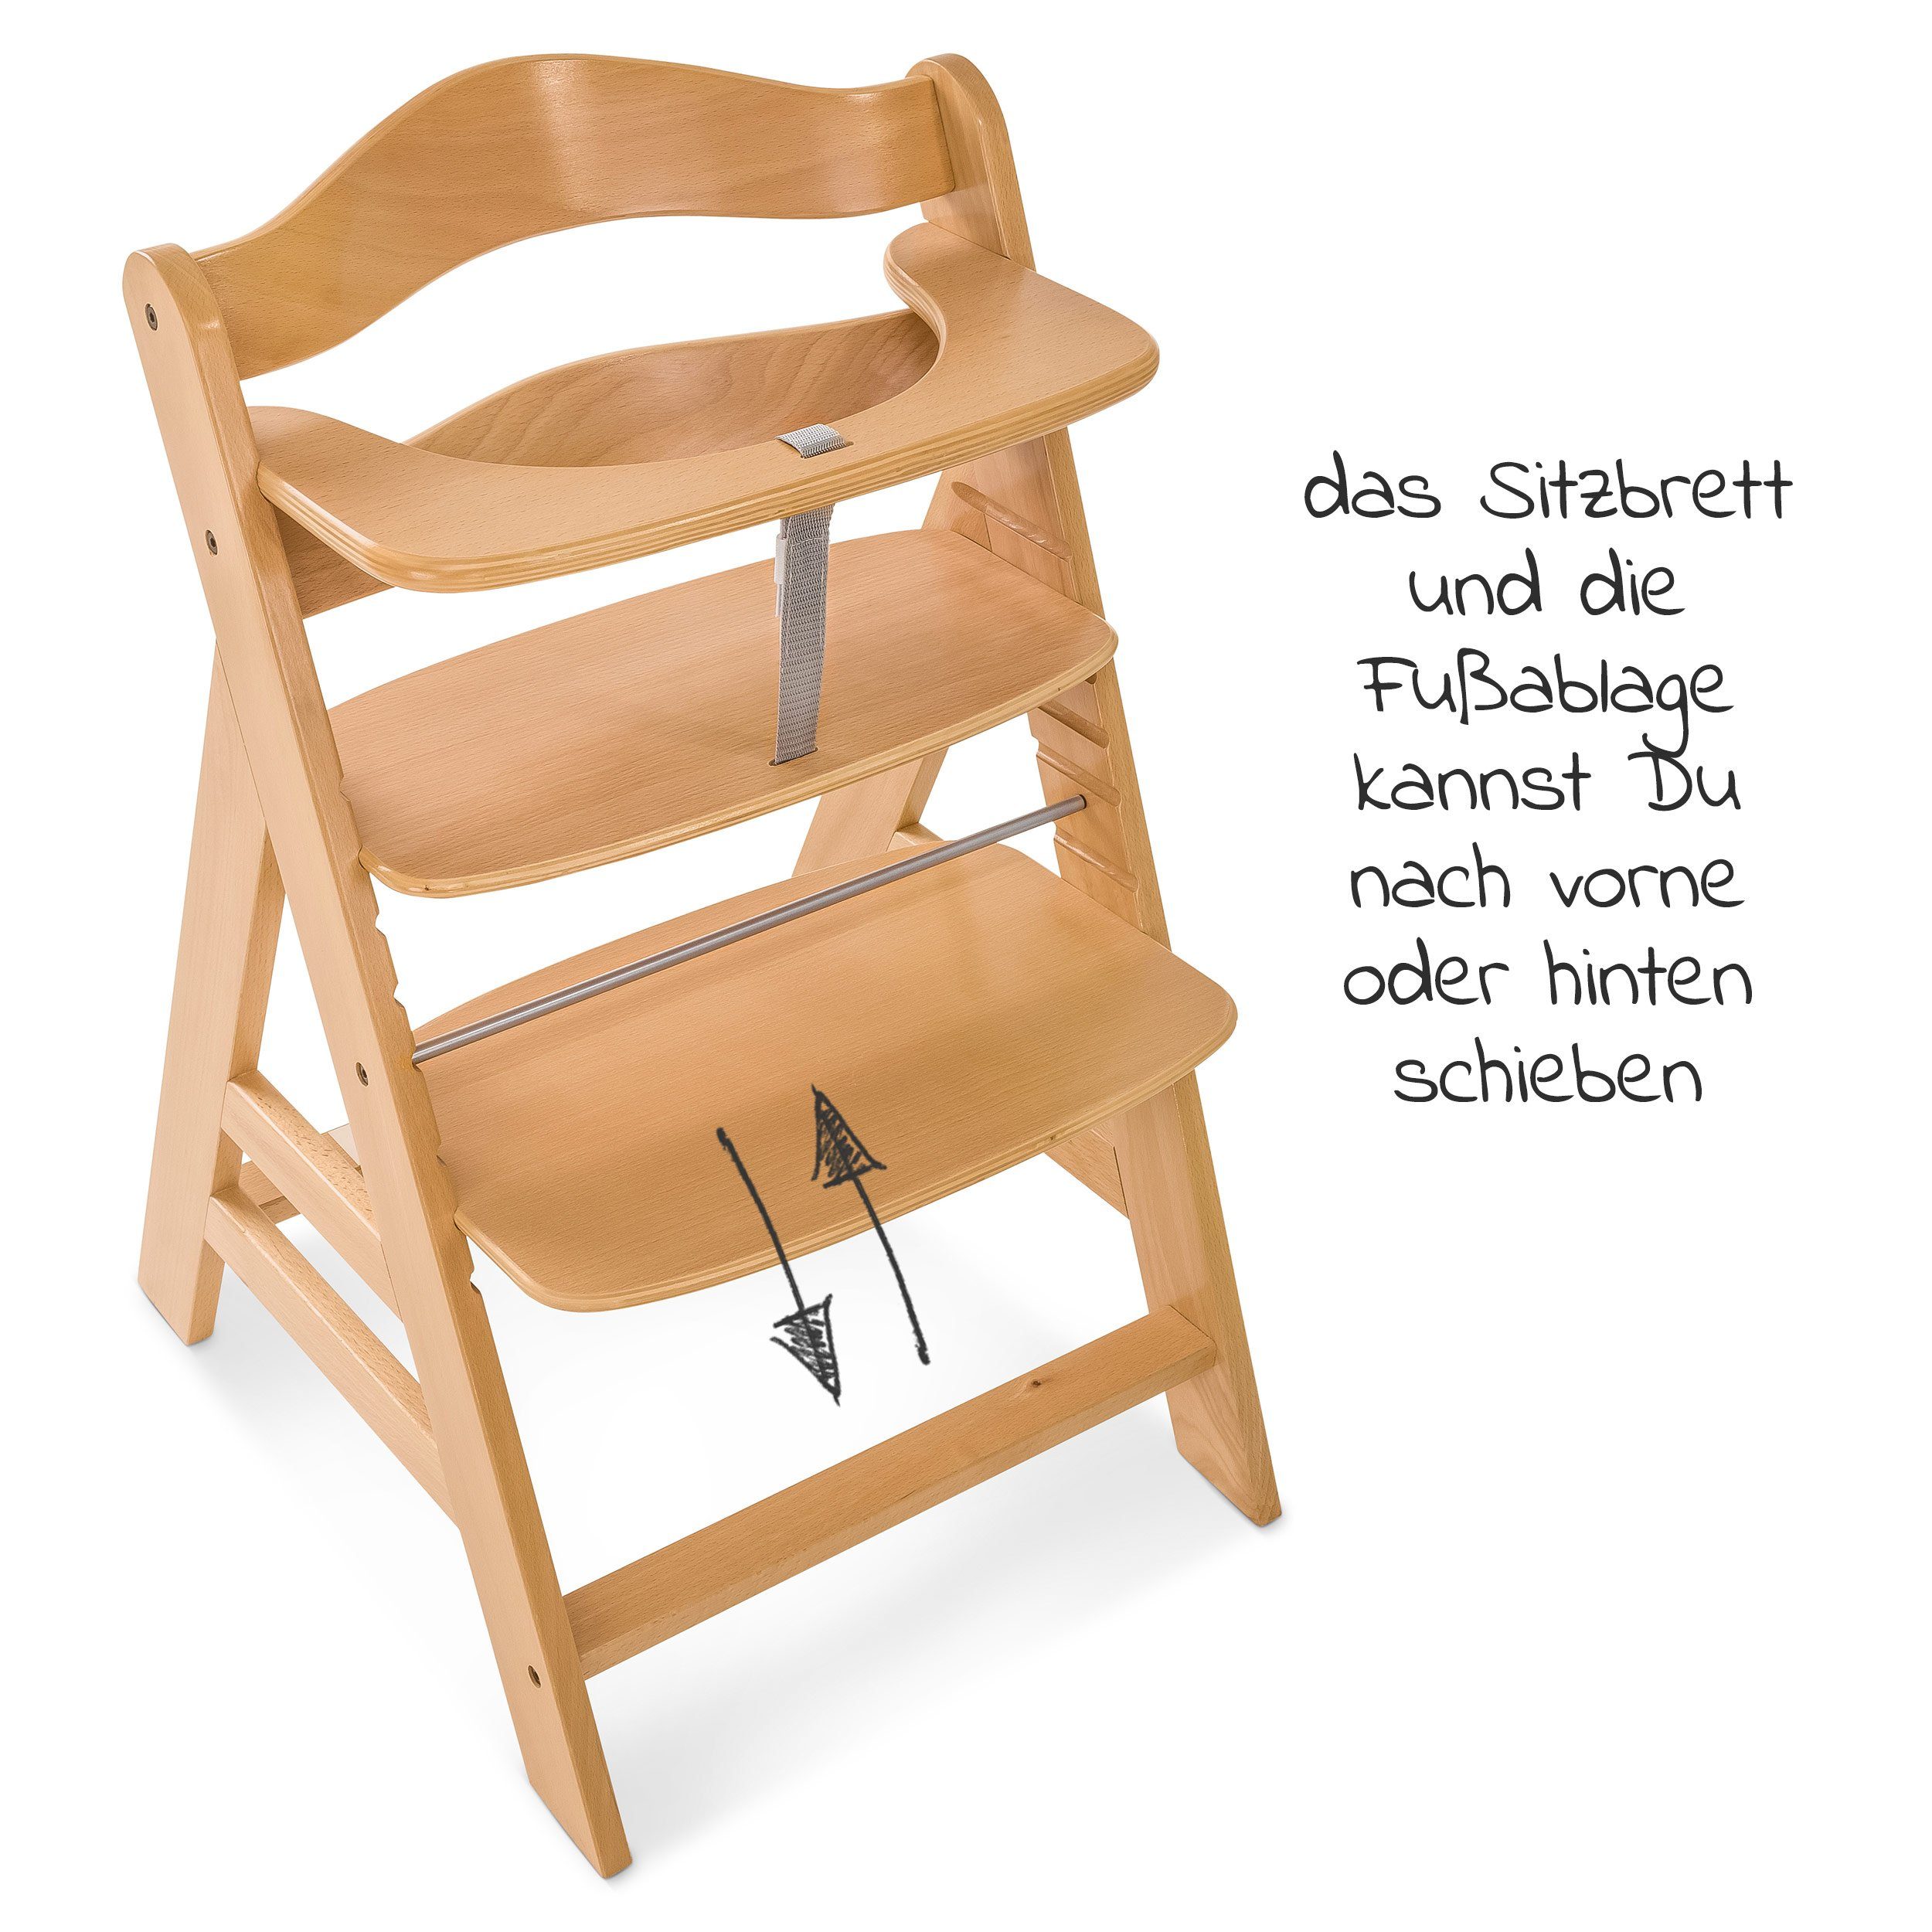 Mitwachsender Kinderhochstuhl Sitzauflage mit Holz Natur, Hochstuhl Hauck Hauck Alpha höhenverstellbar Plus